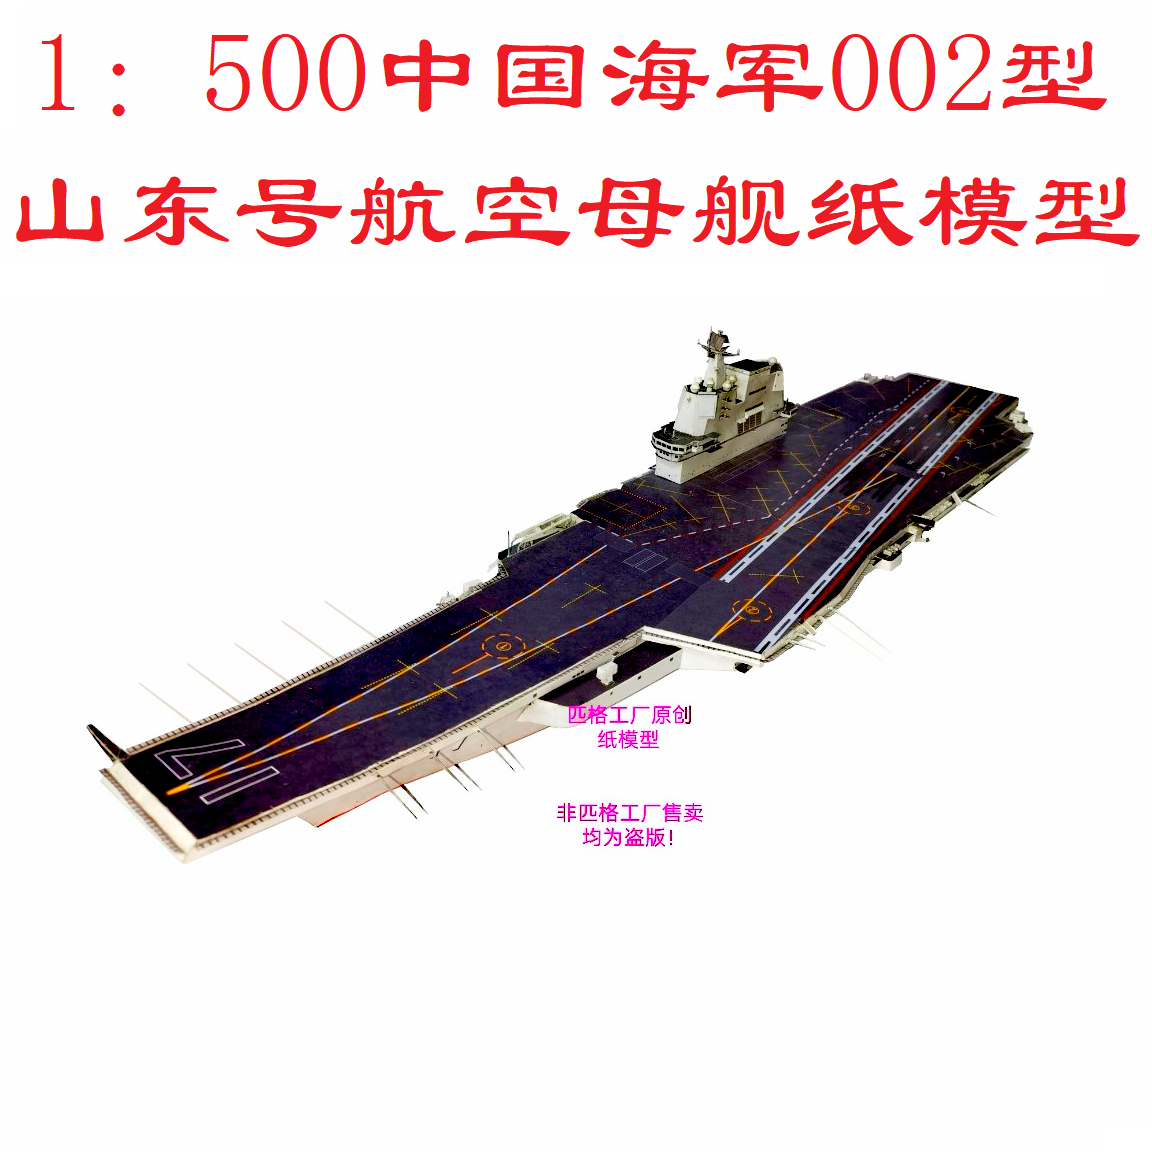 匹格中国海军002型国产航母山东号航空母舰模型3D纸模DIY军舰模型